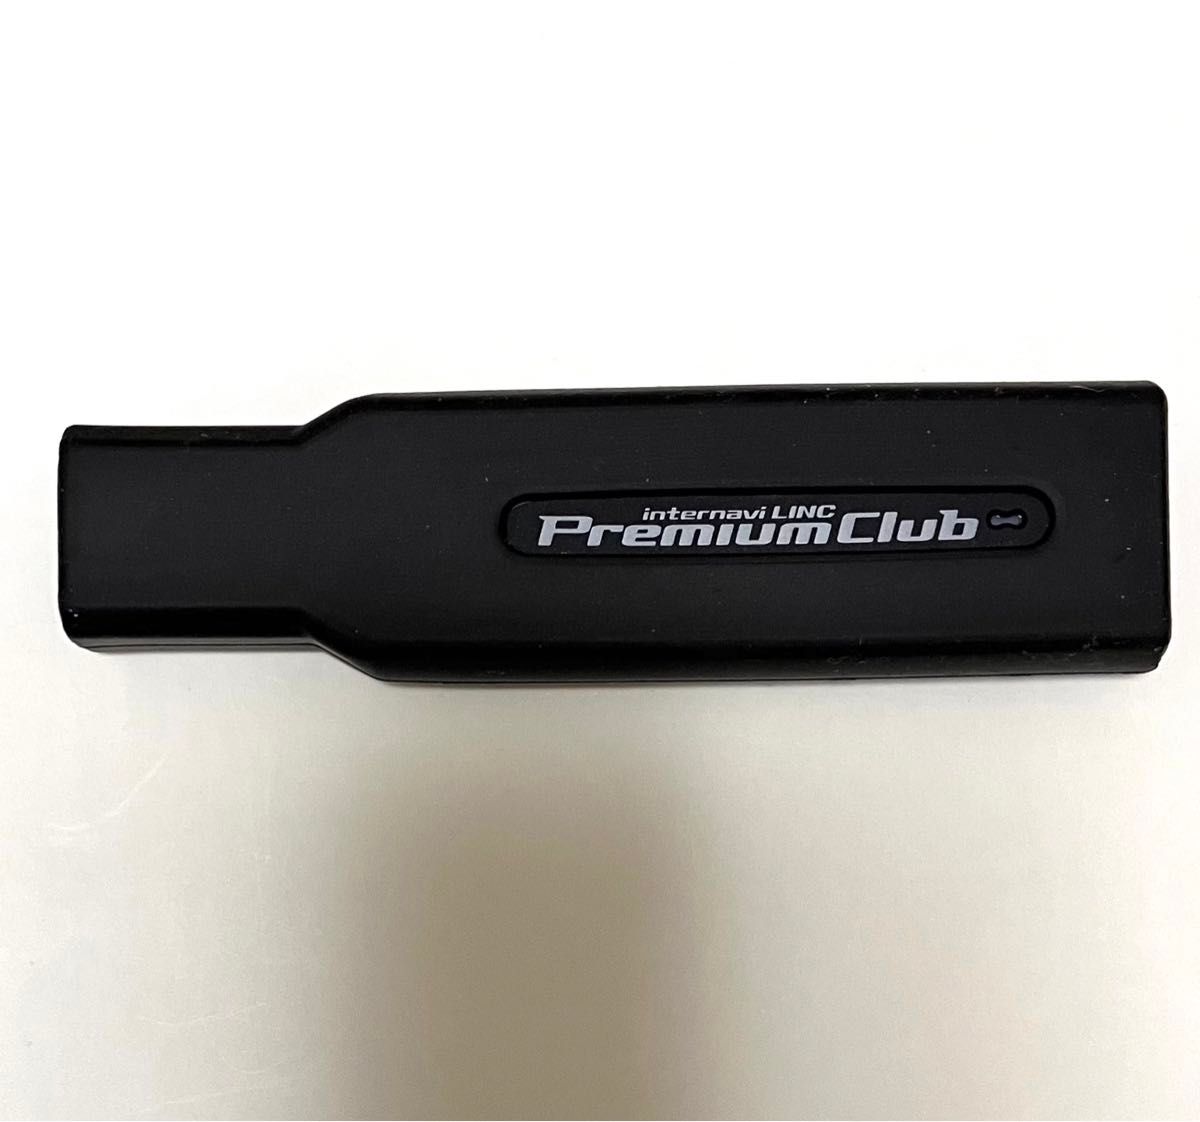 ホンダ internavi LINC インターナビ USB データ通信モジュール HSK-600G プレミアムクラブ SIM付中古